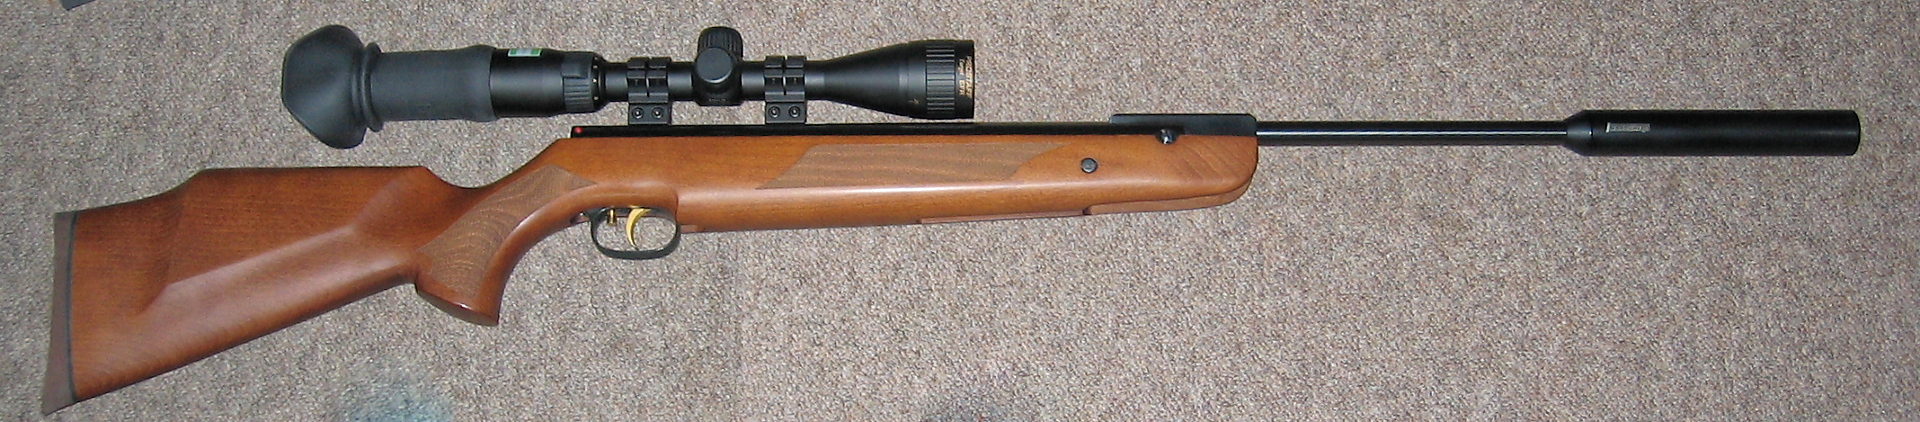 Weihrauch HW95K Air Rifle For sale